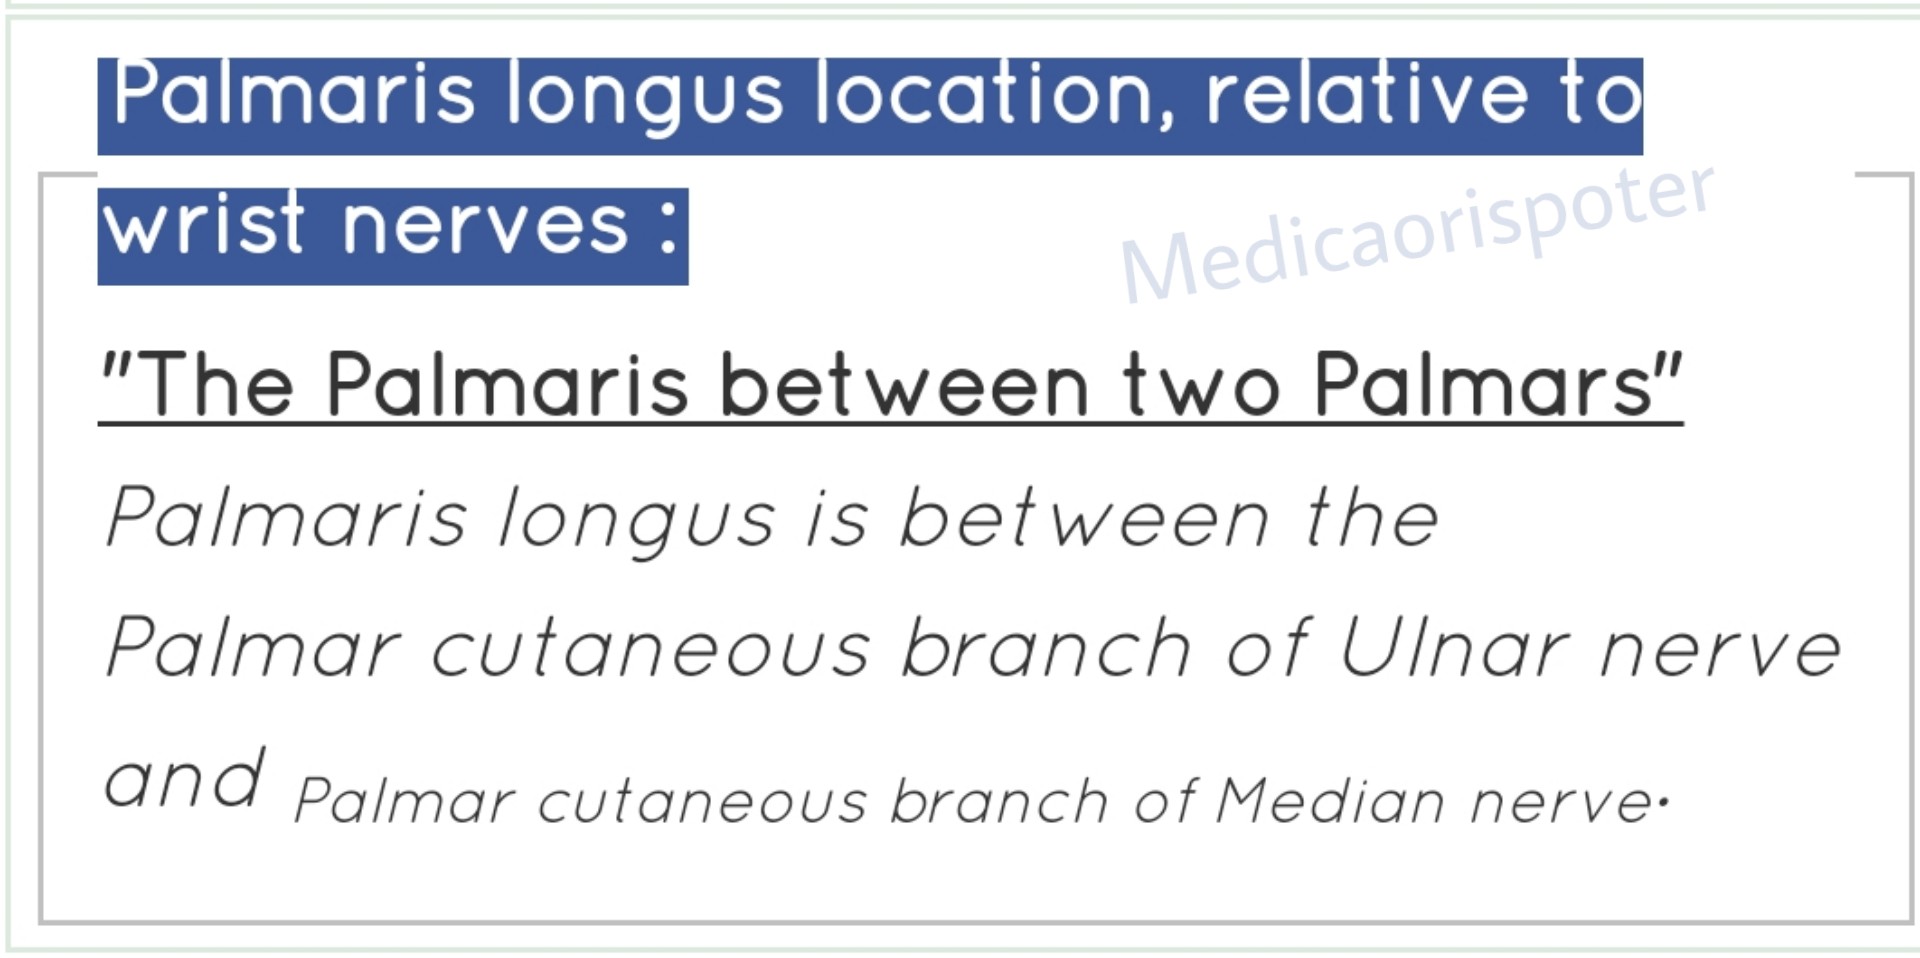 Palmaris Longus Location relative to Wrist